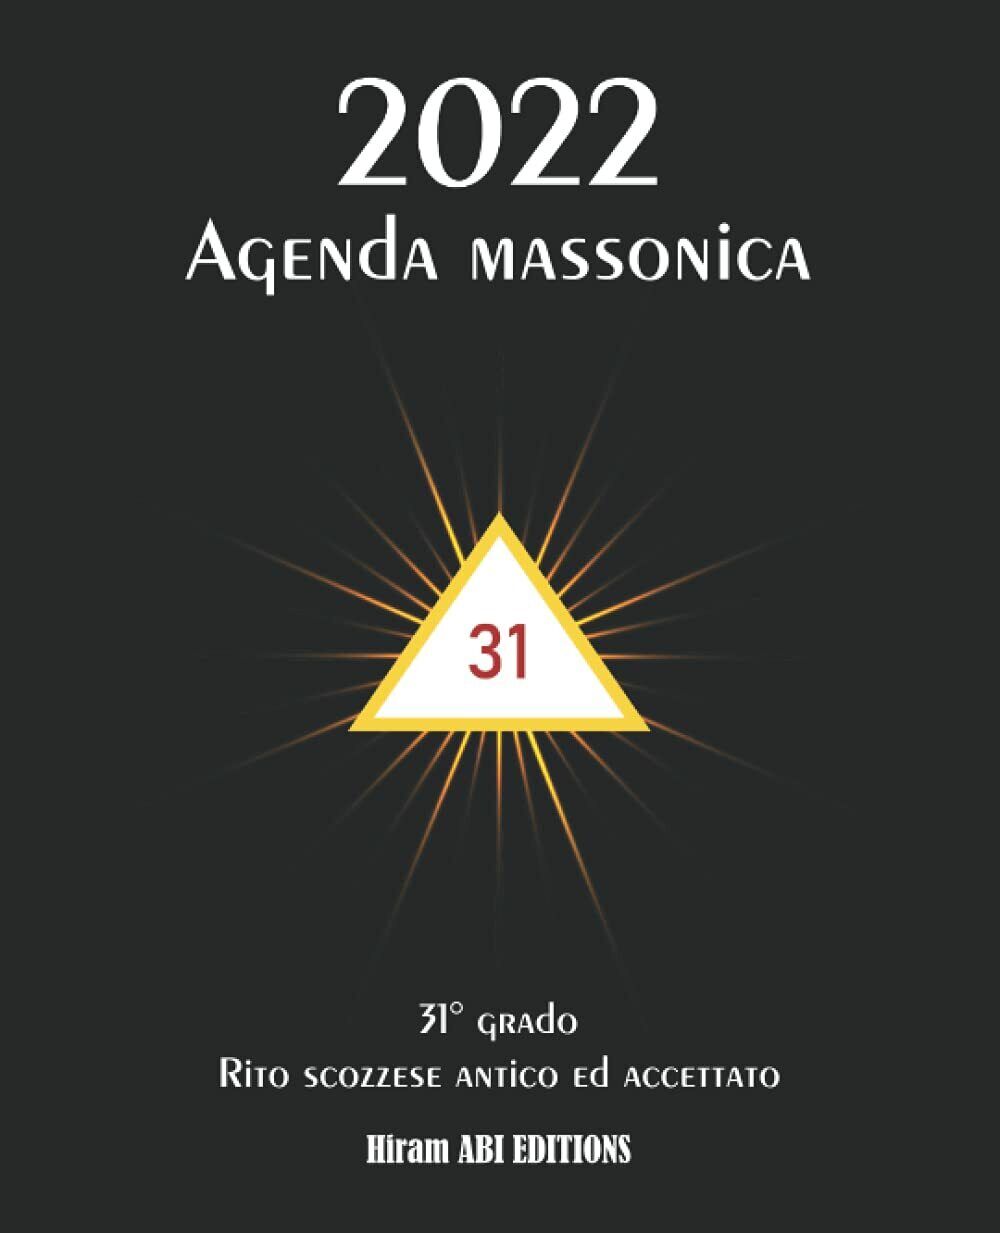 Agenda massonica: Tema speciale 31? grado | Calendario - Settimanale - Pianifica